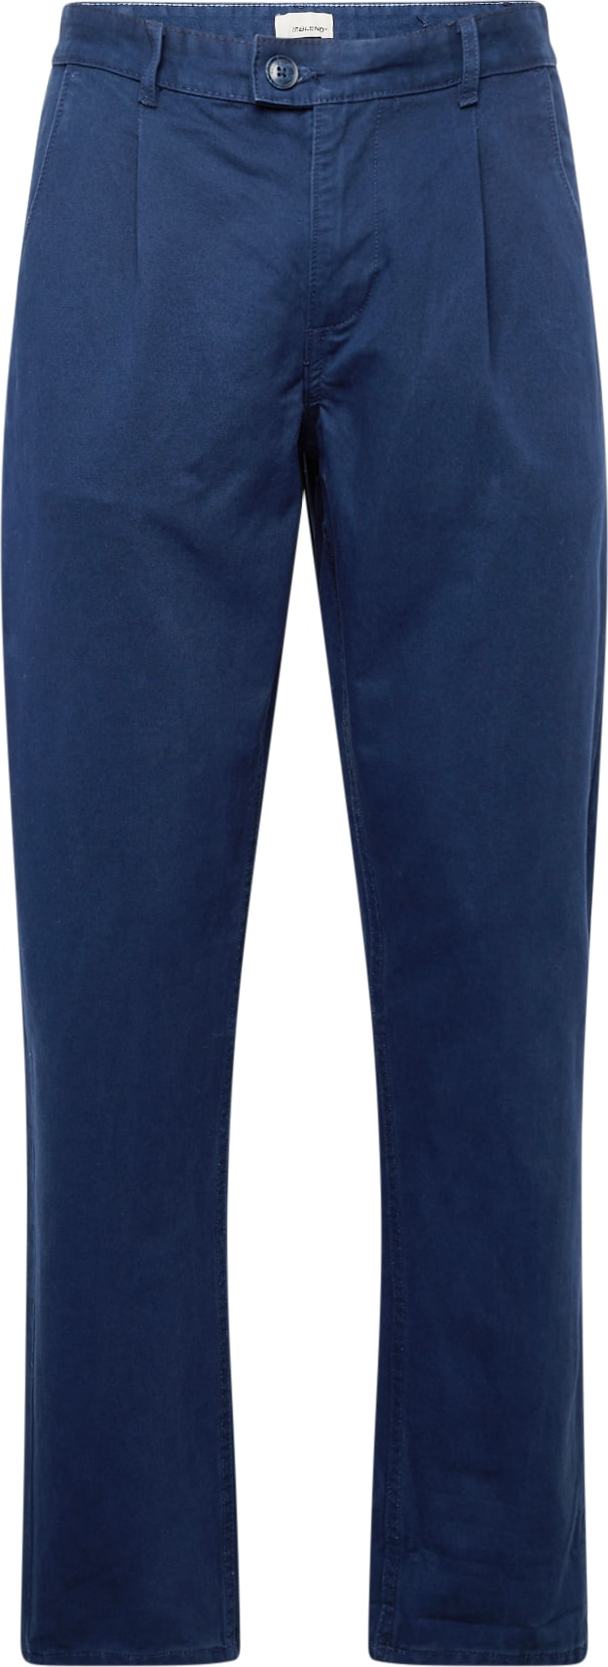 Kalhoty se sklady v pase Blend tmavě modrá